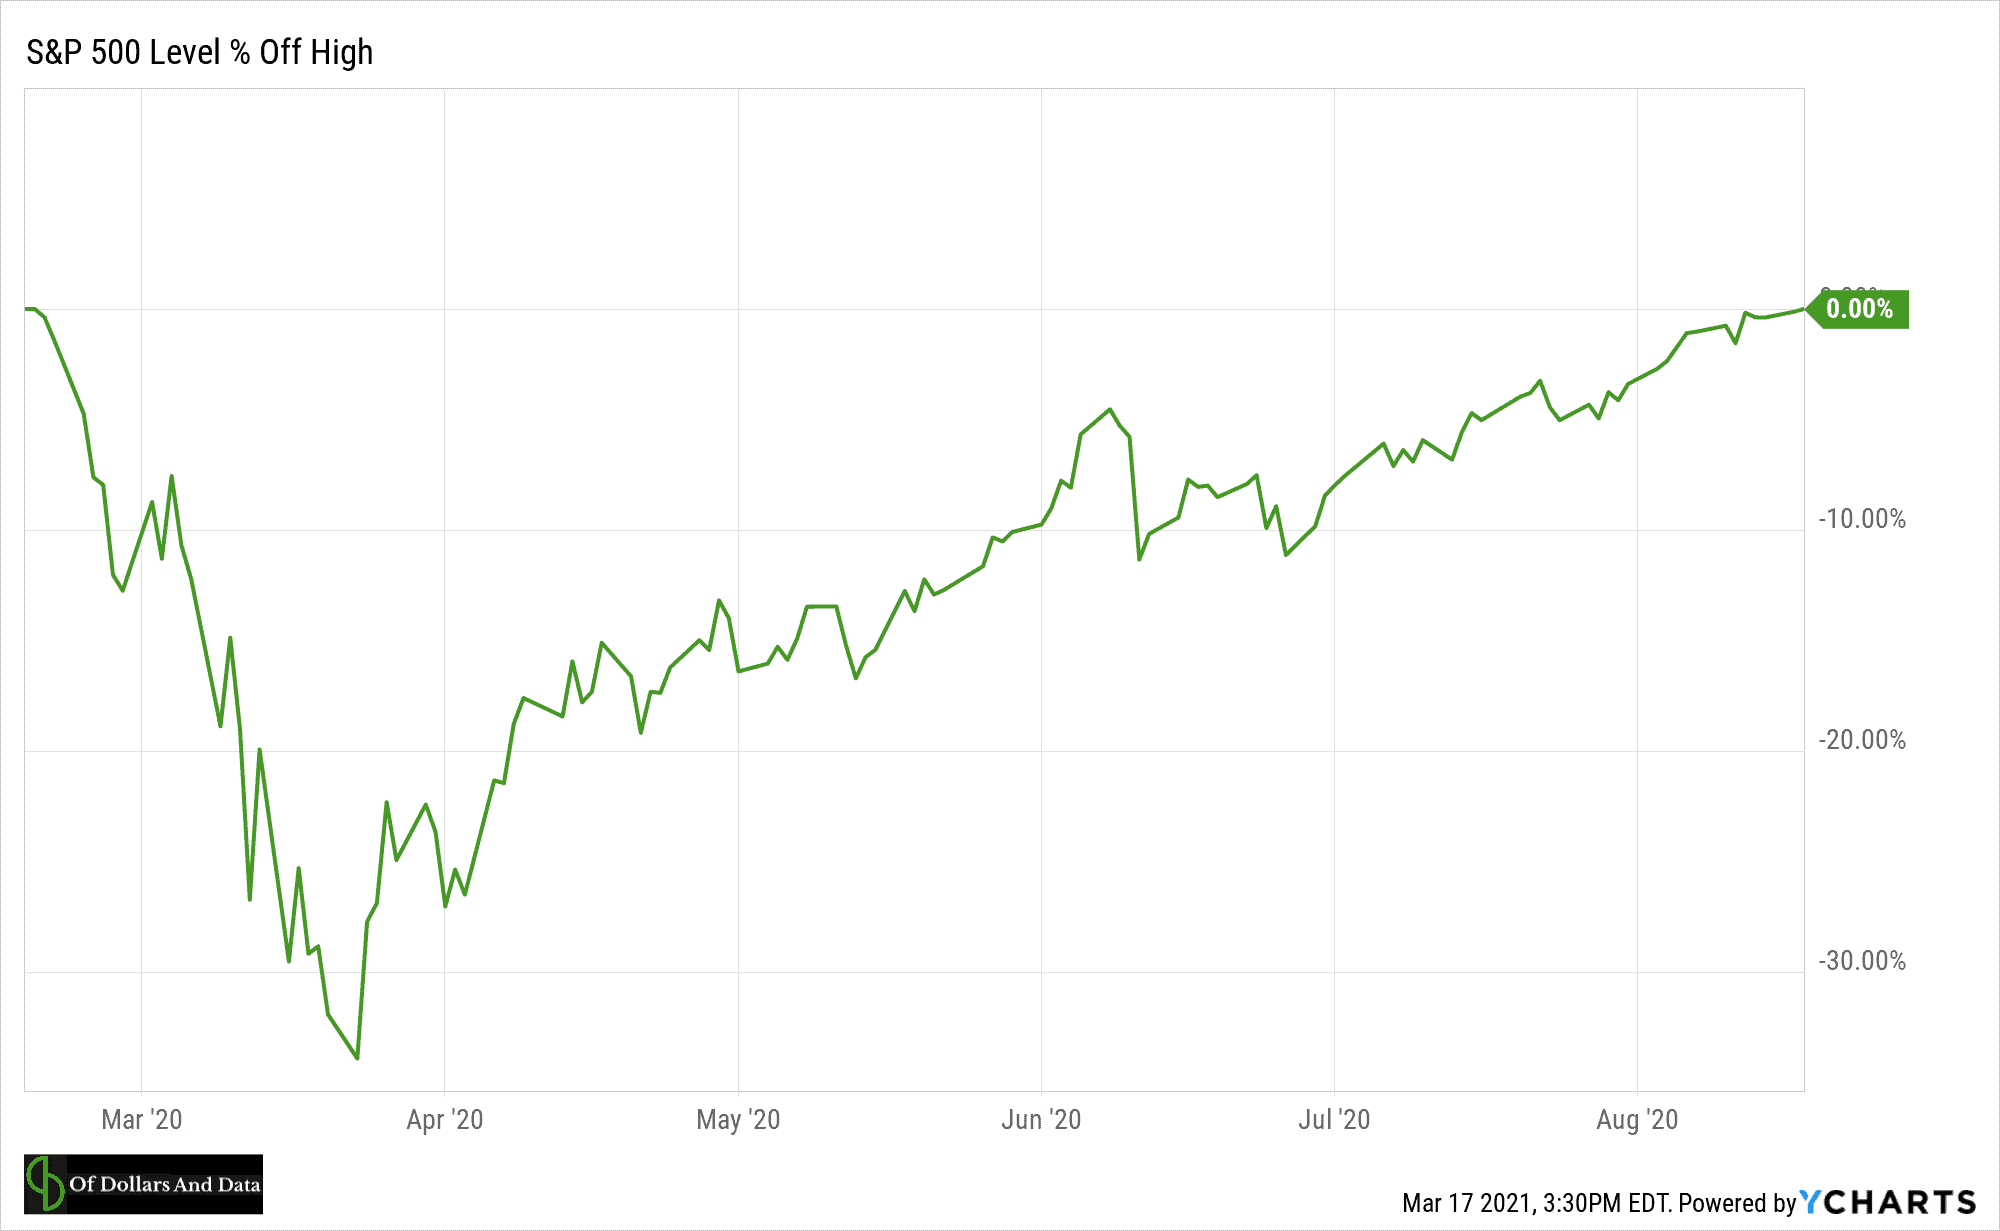 S&P 500 drawdown plot from February 2020 to September 2020